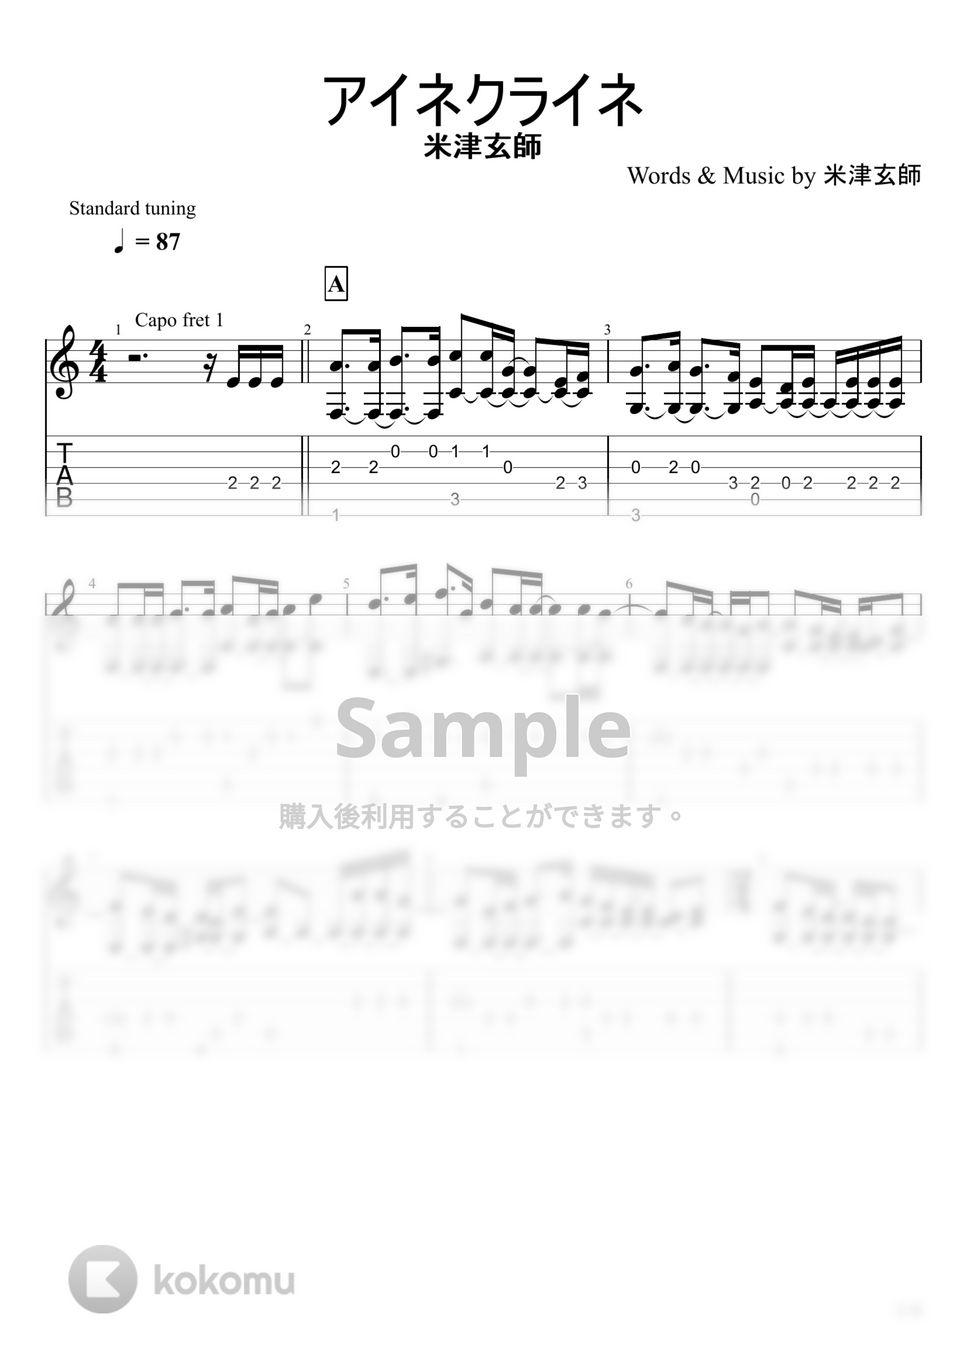 米津玄師 - アイネクライネ (ソロギター) by u3danchou